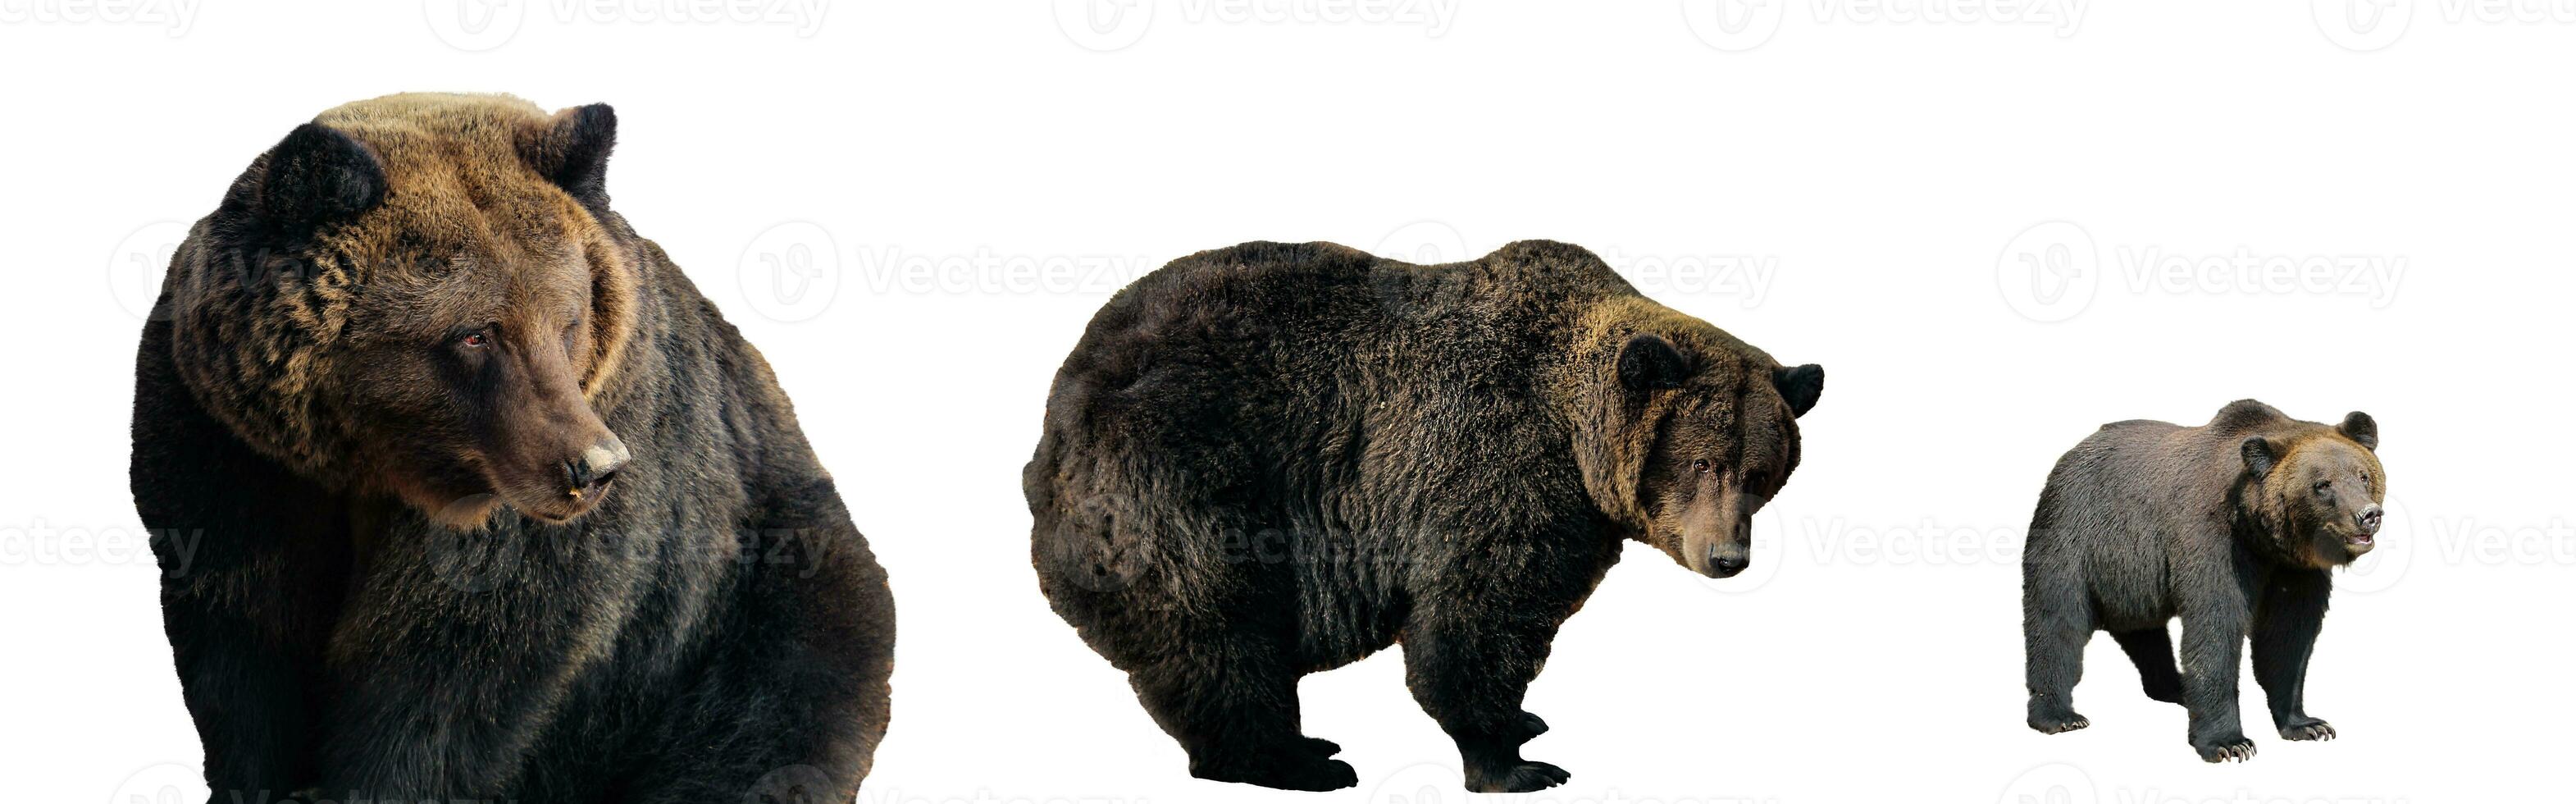 uppsättning av stor brun björnar isolerat på vit bakgrund, ursus arctos. grizzly i annorlunda poser för design foto